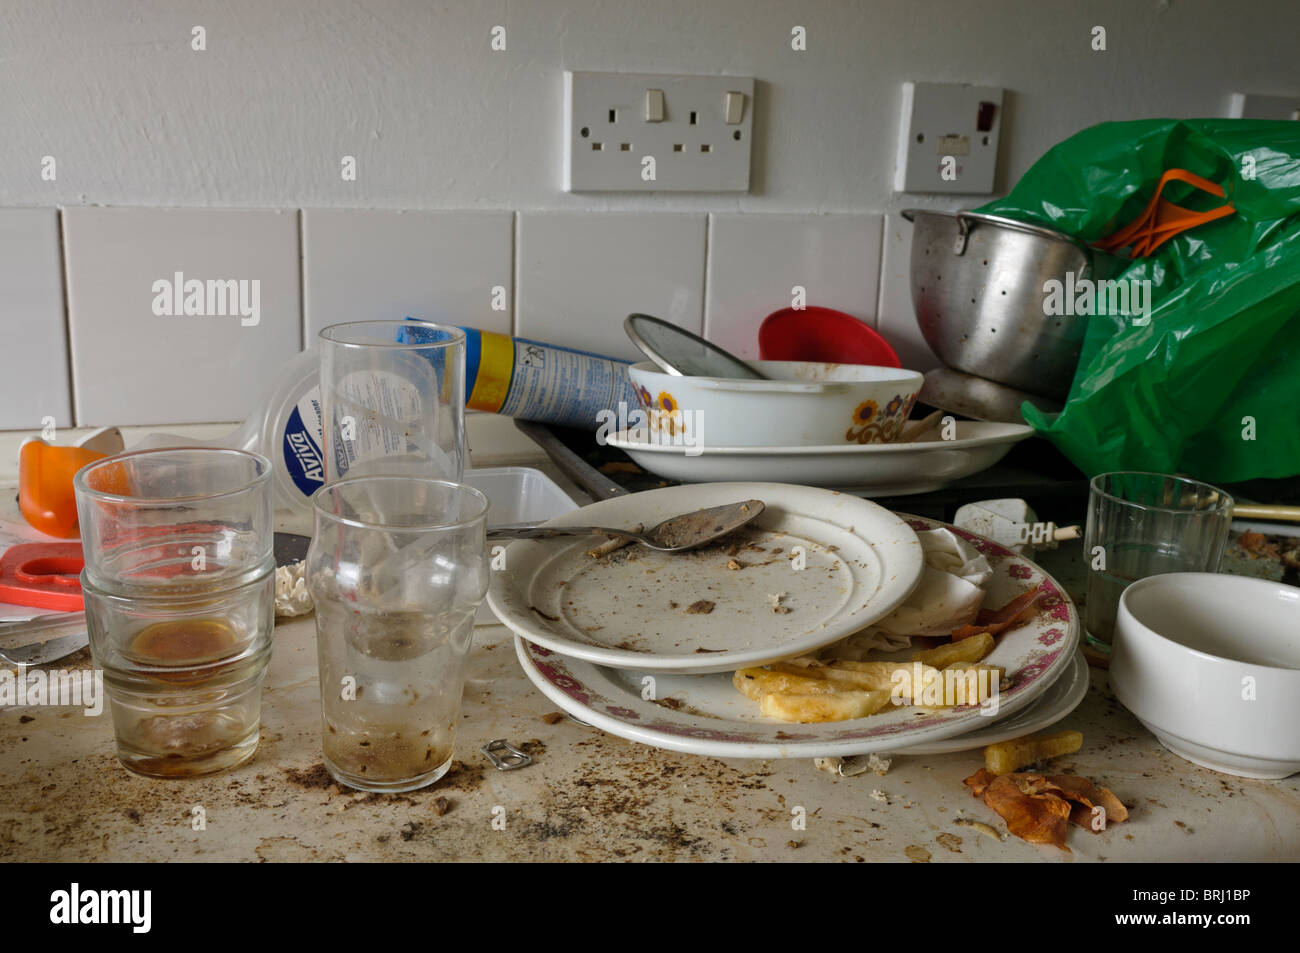 Molto piatti sporchi su una sporca del piano cucina Foto Stock